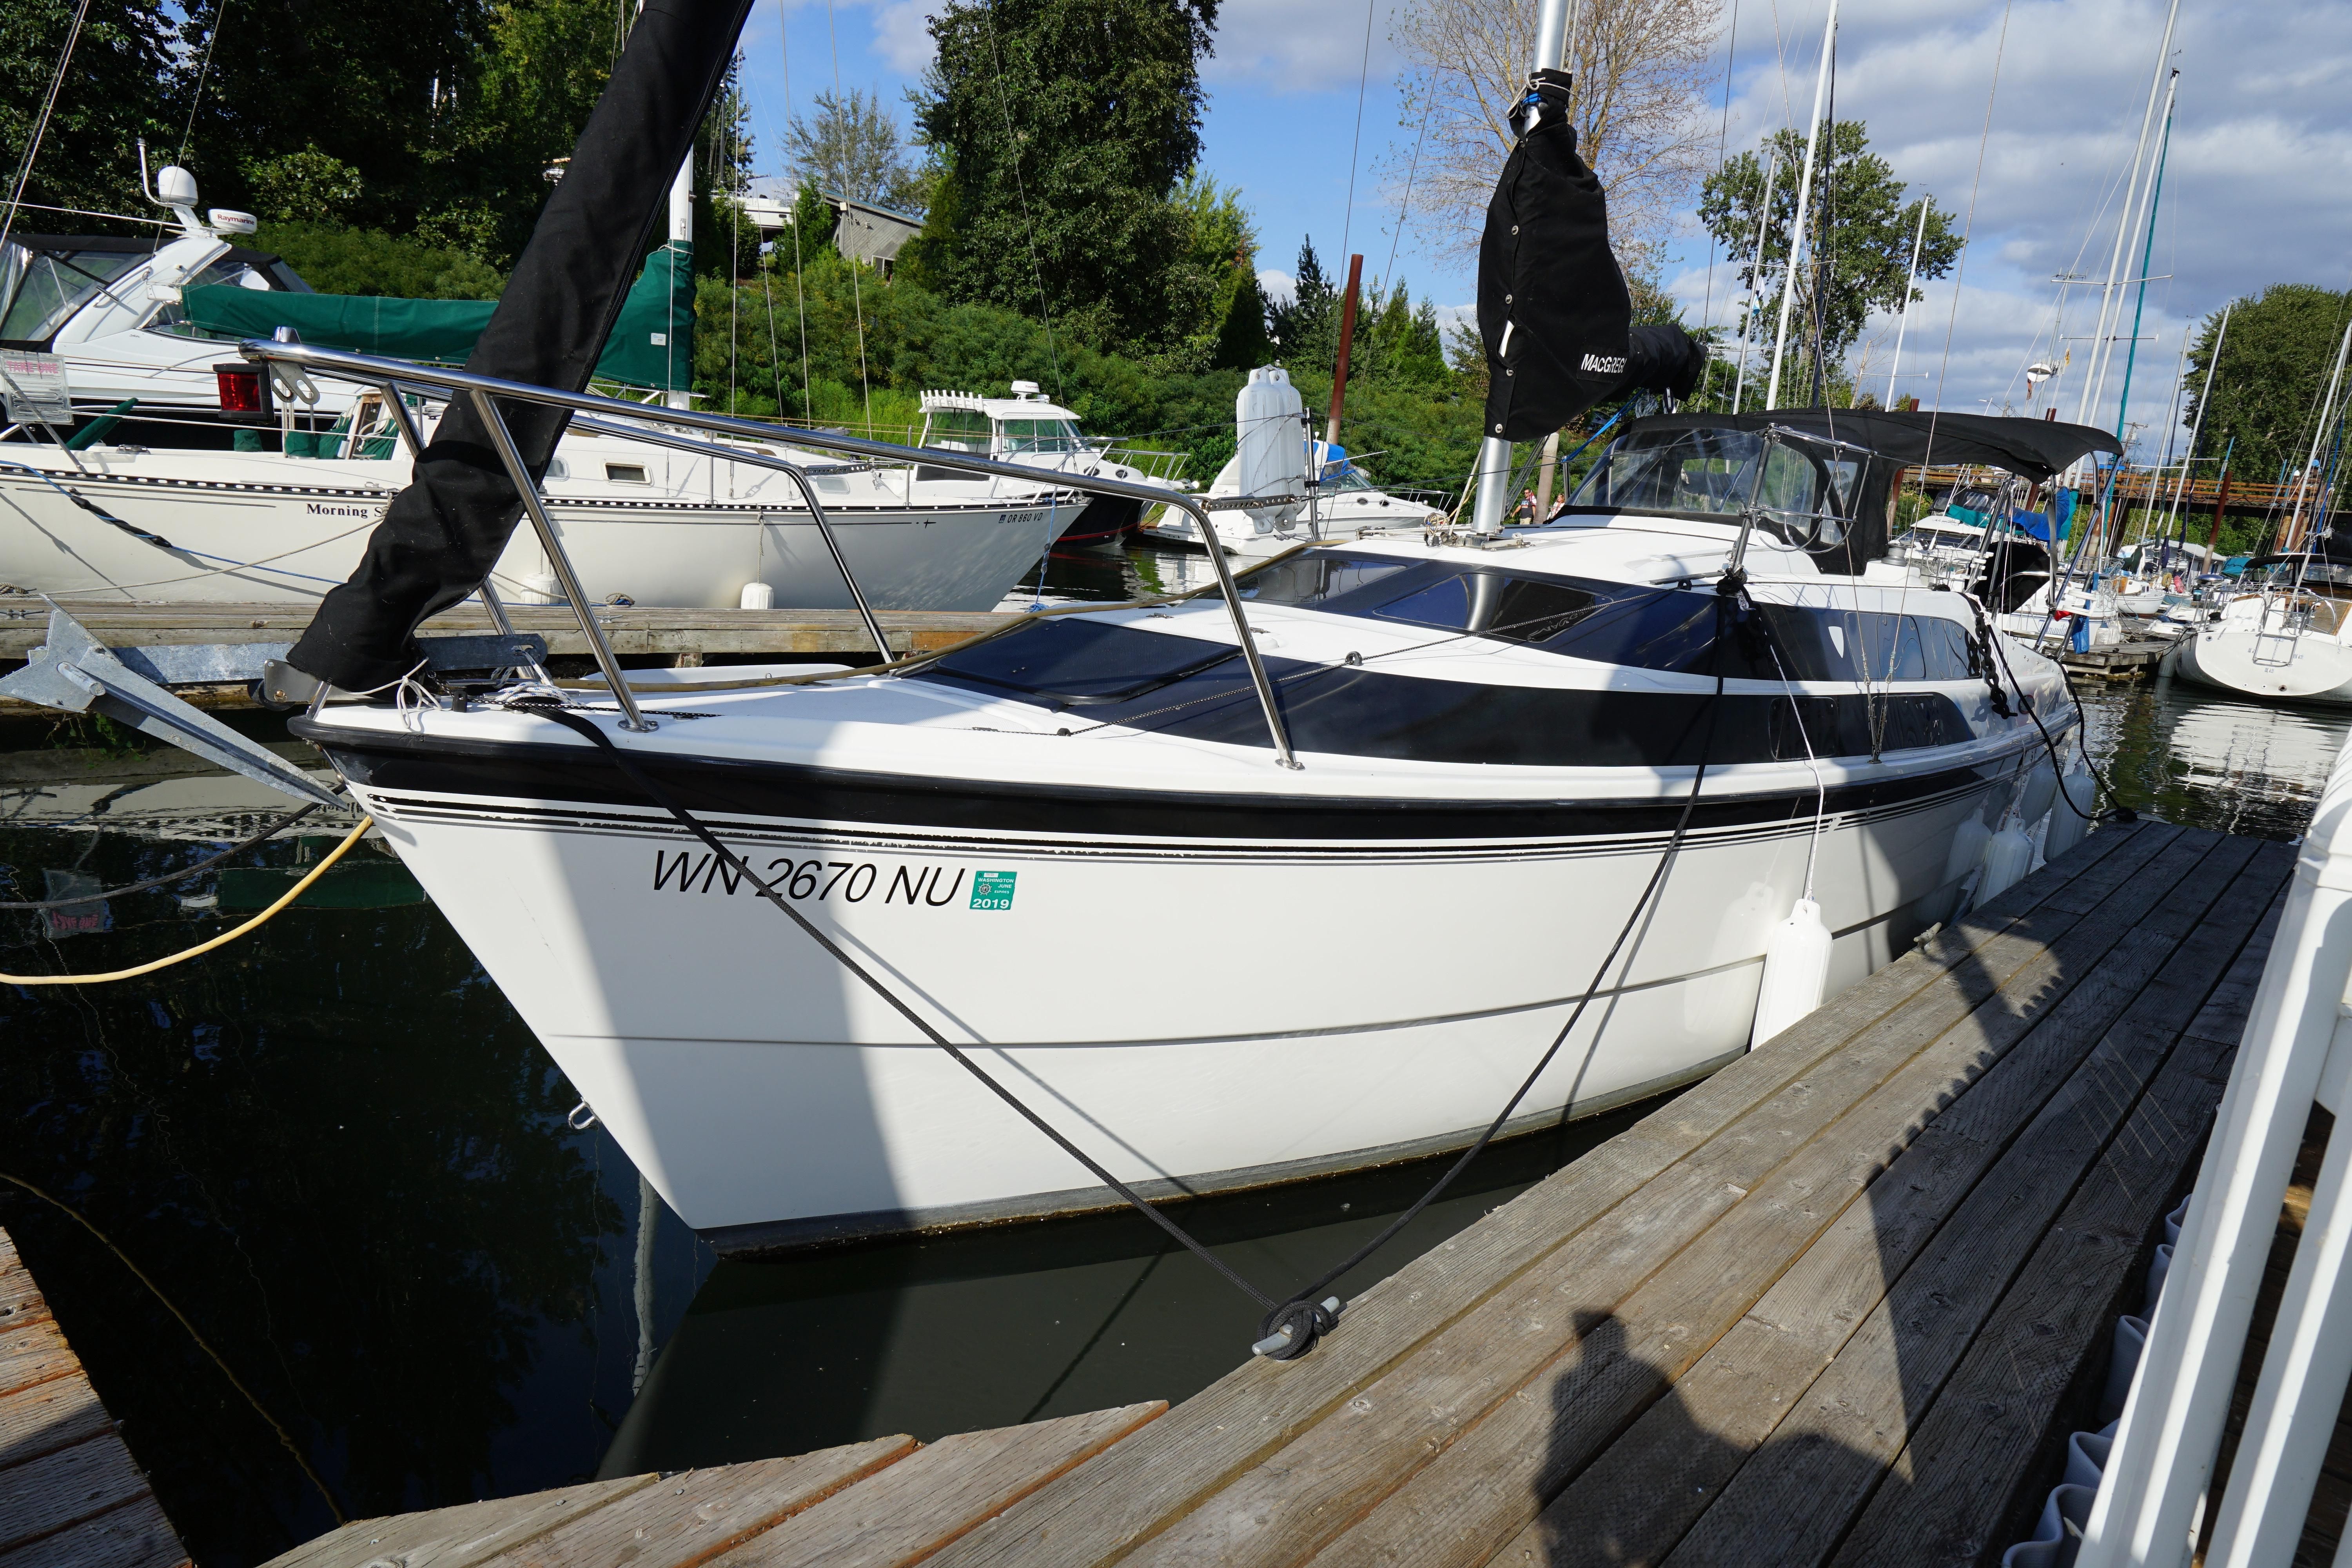 macgregor sailboat for sale in ontario canada